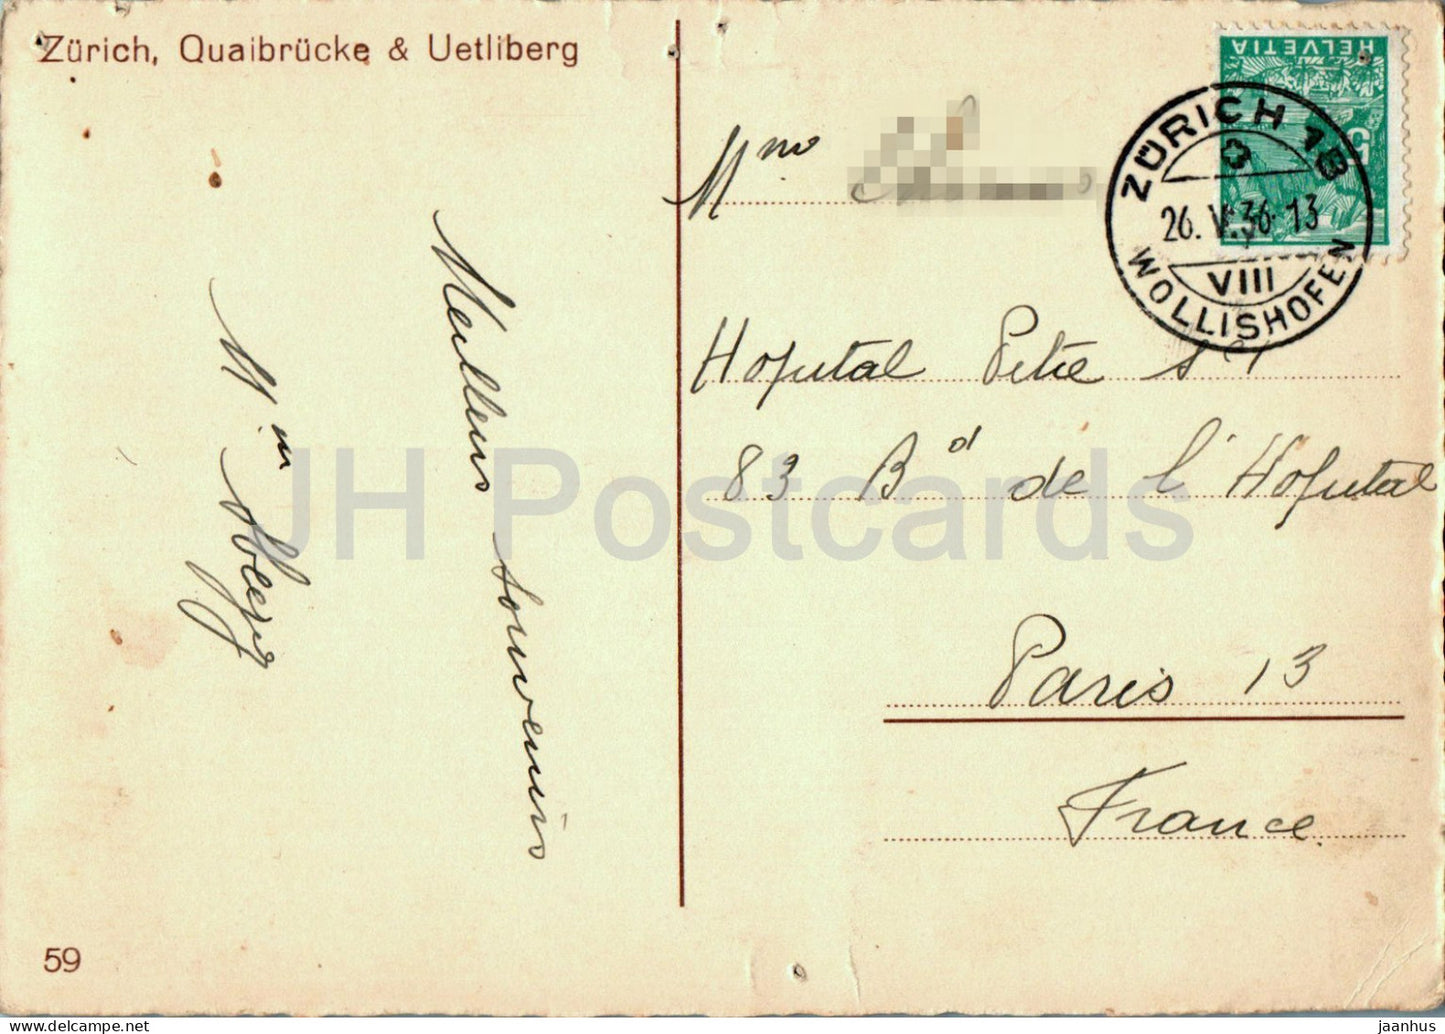 Zurich - Quaibrucke - Uetliberg - tram - pont - carte postale ancienne - 59 - 1936 - Suisse - utilisé 